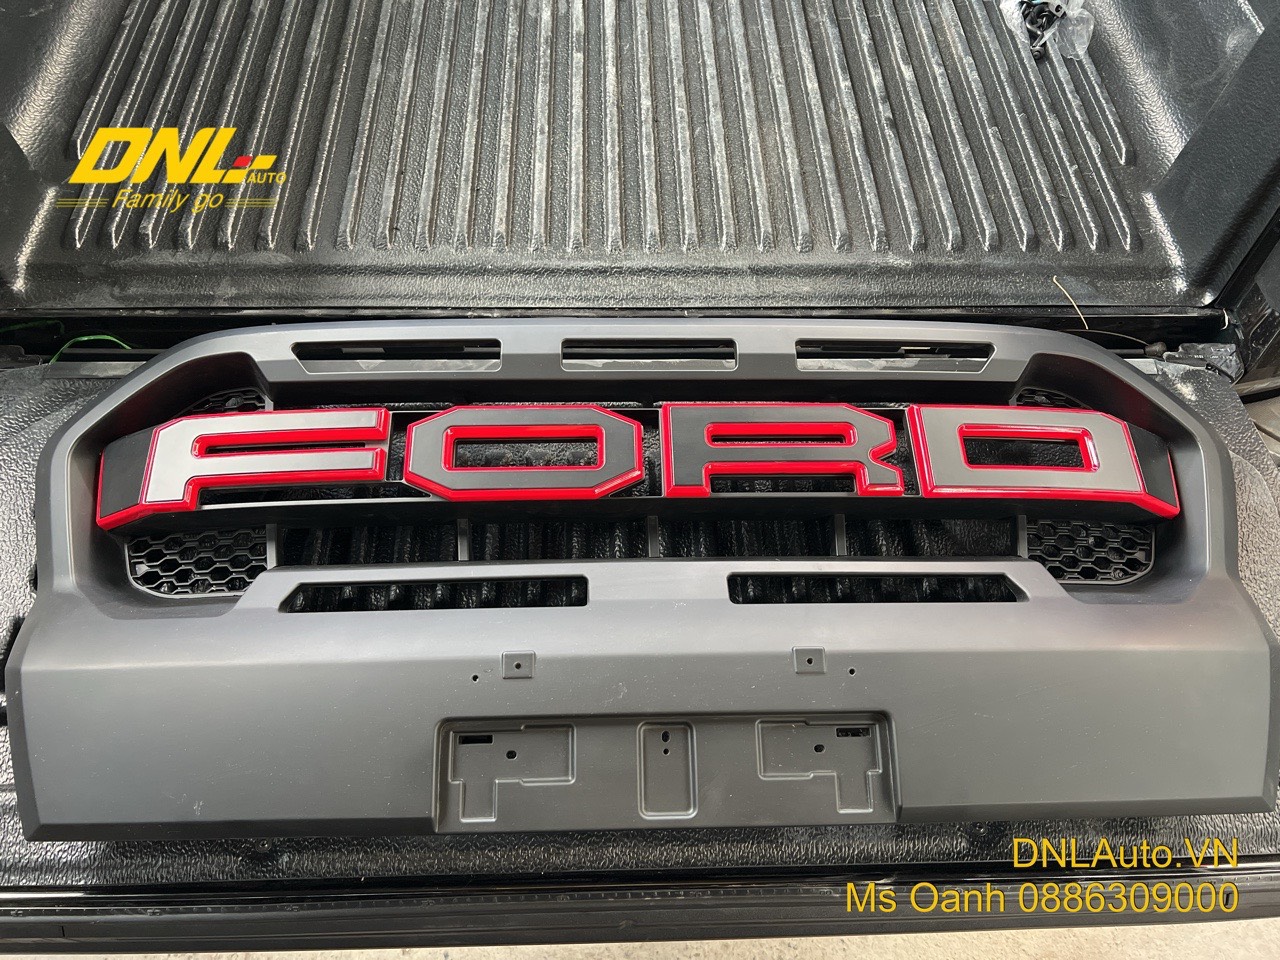 Mặt calang chữ FORD lớp với màu sơn đen chỉ đỏ bao quanh là điểm nhấn cho phần đầu xe bán tải Ford Ranger Wildtrak